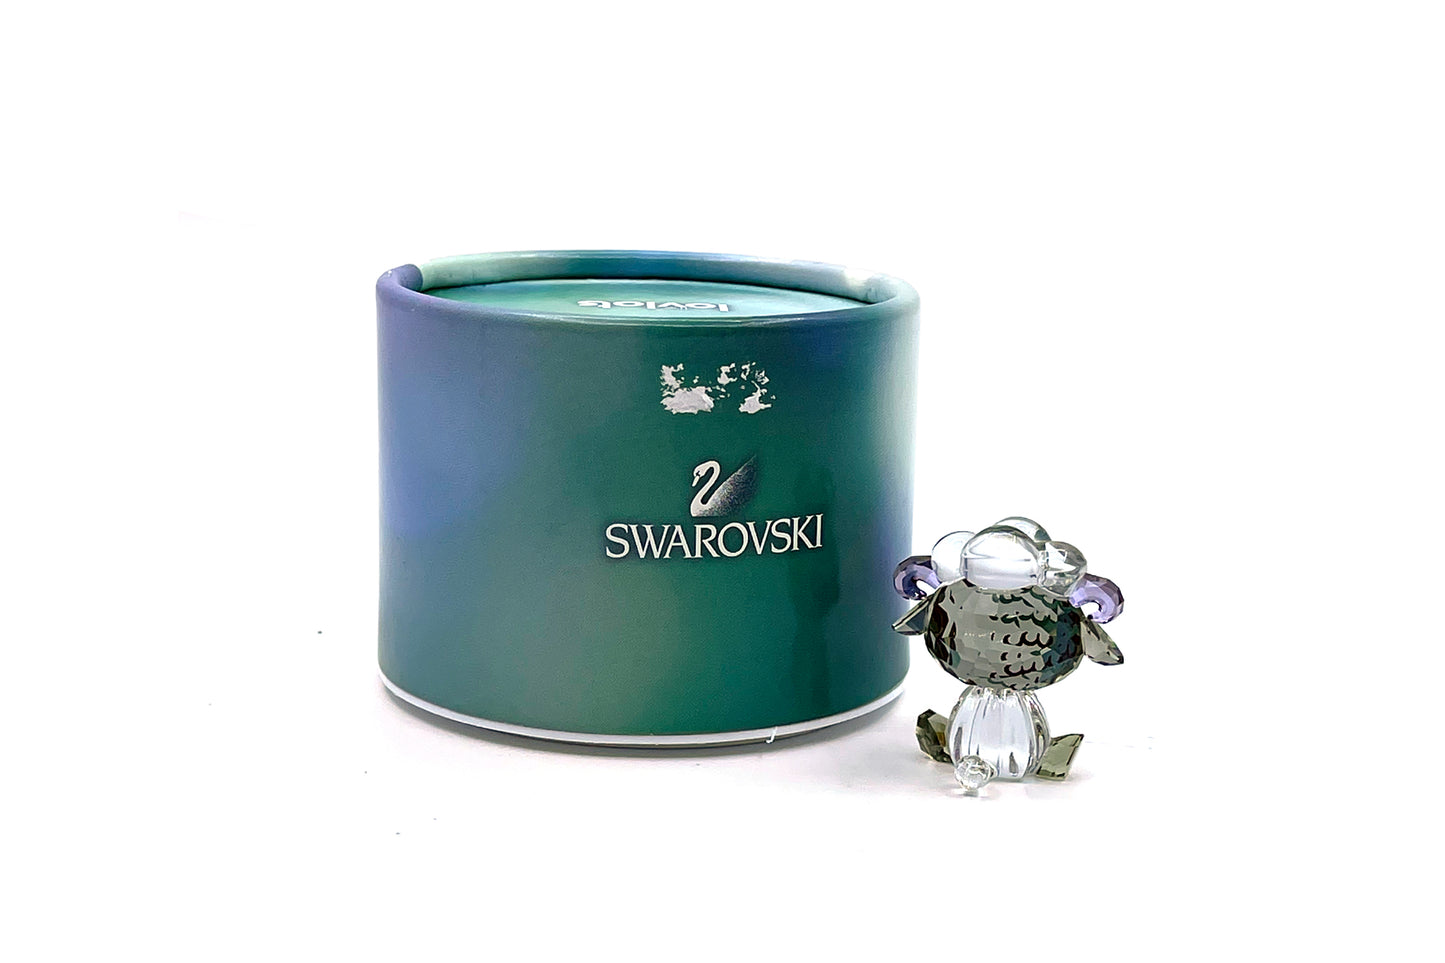 Swarovski Zodiac - Sheep With Flower (5004521)